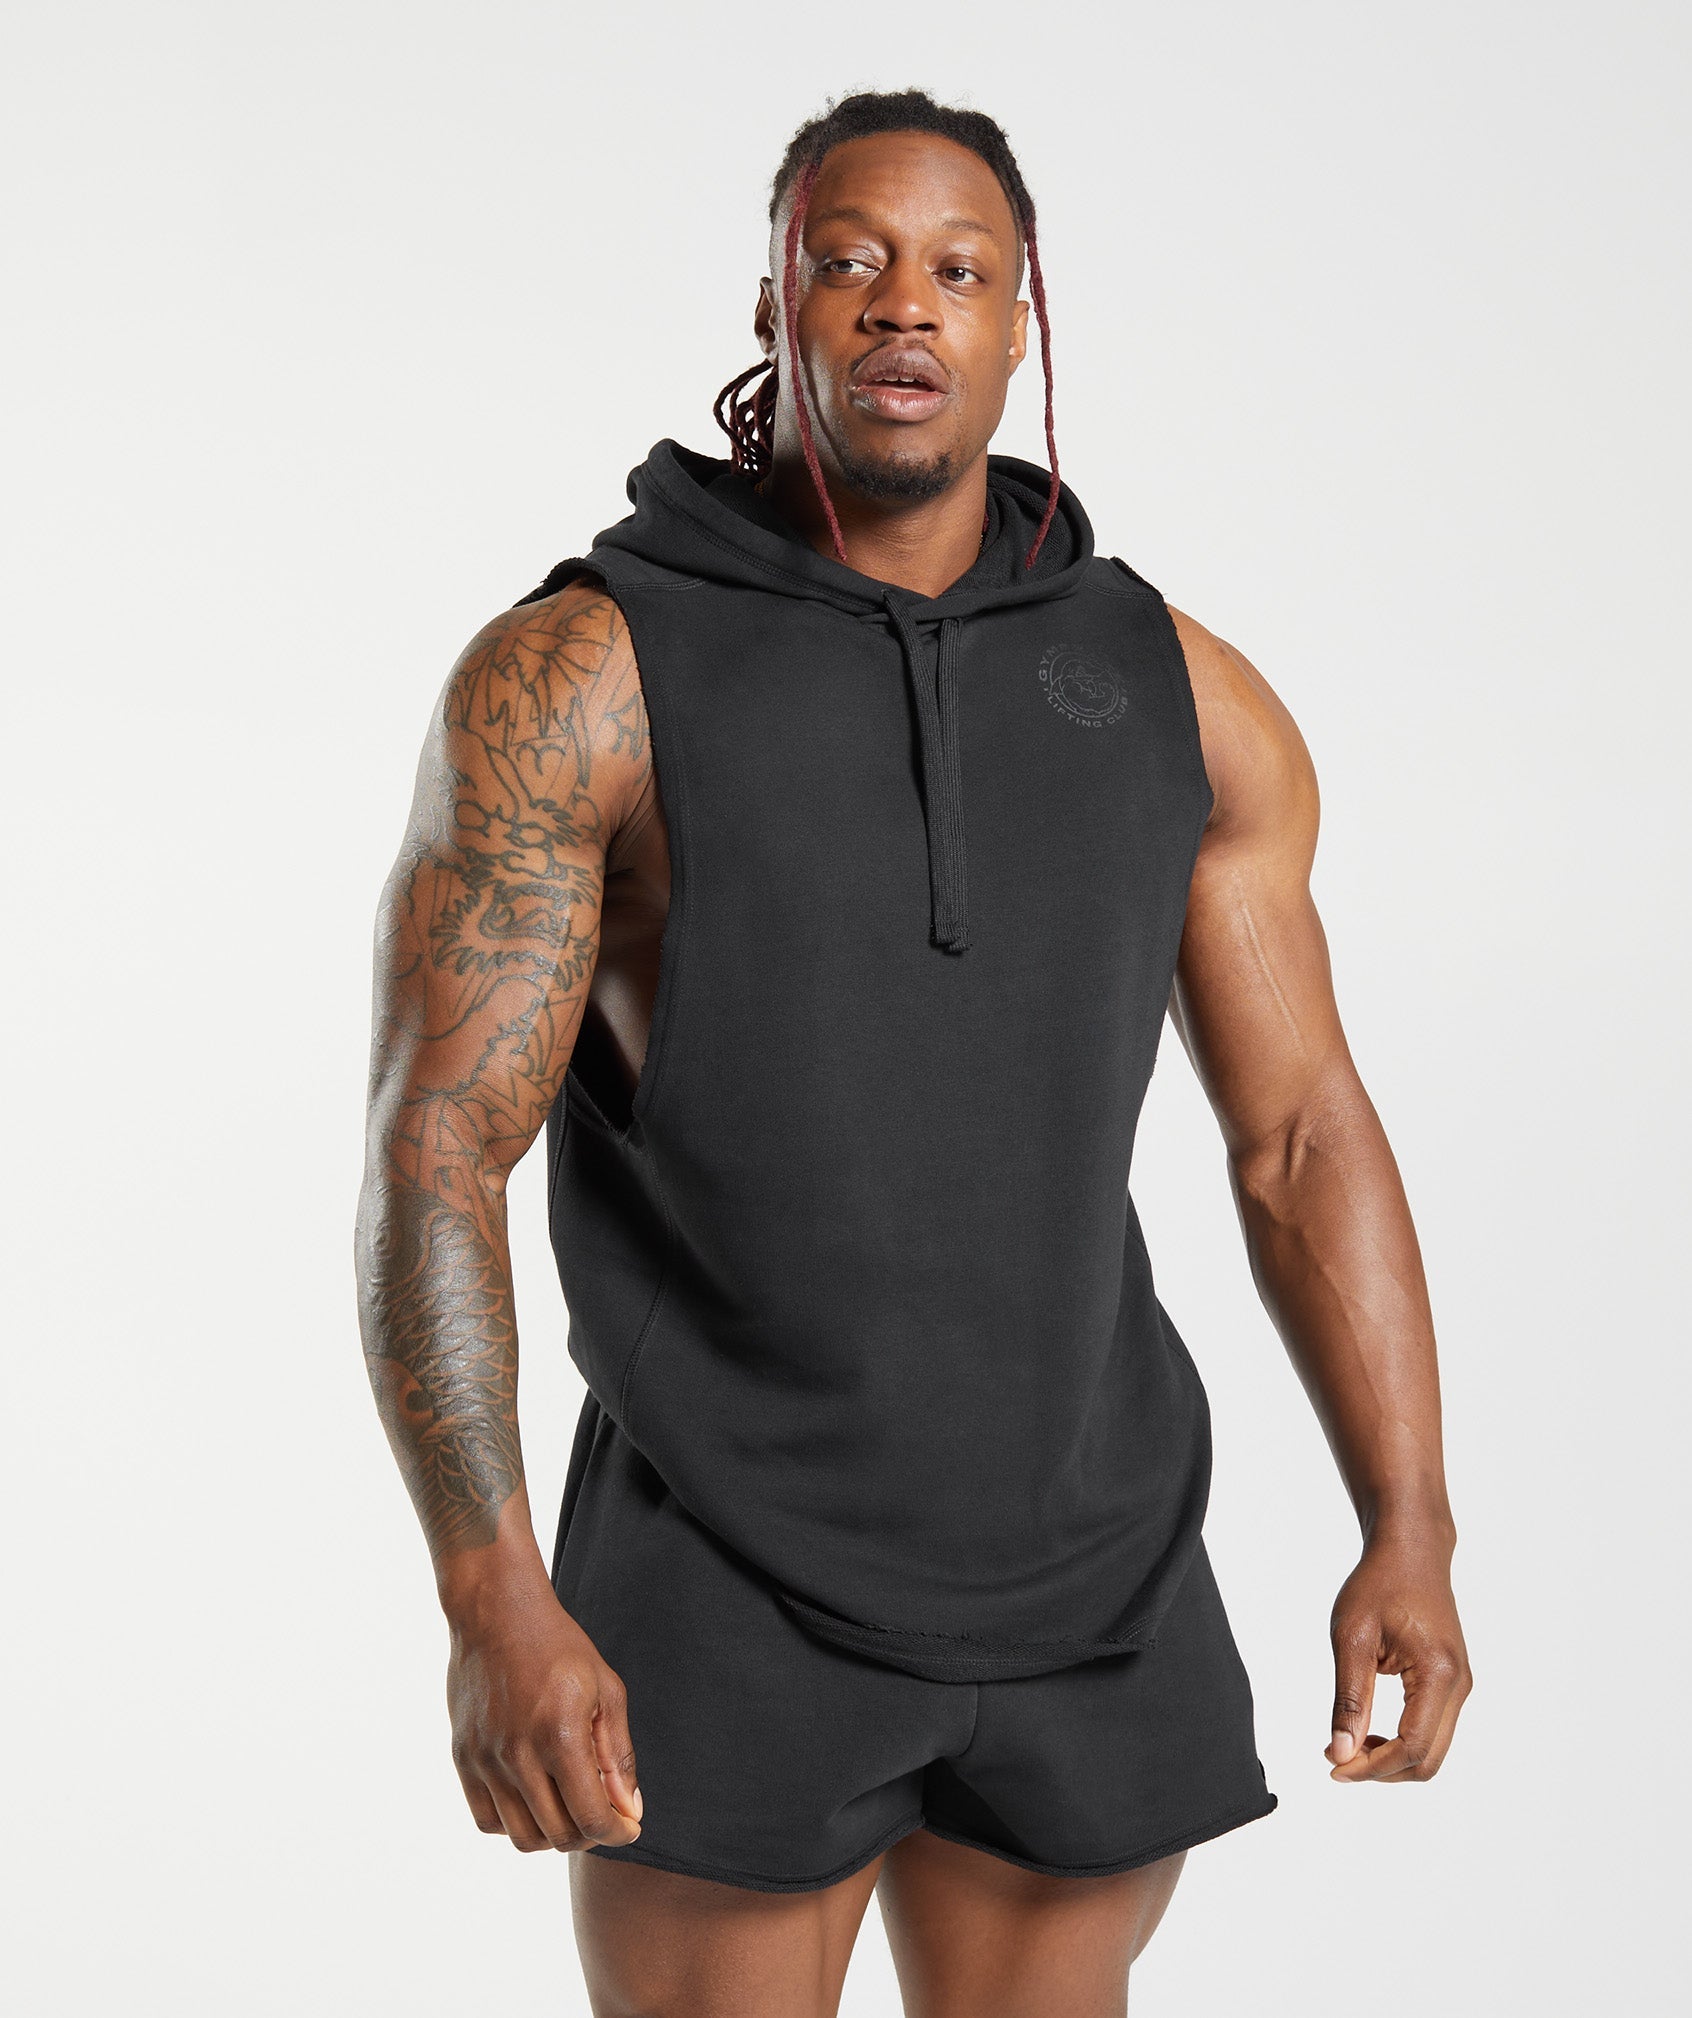 Men's Sleeveless Zip Up Hooded Workout Tank Tops Lightweight